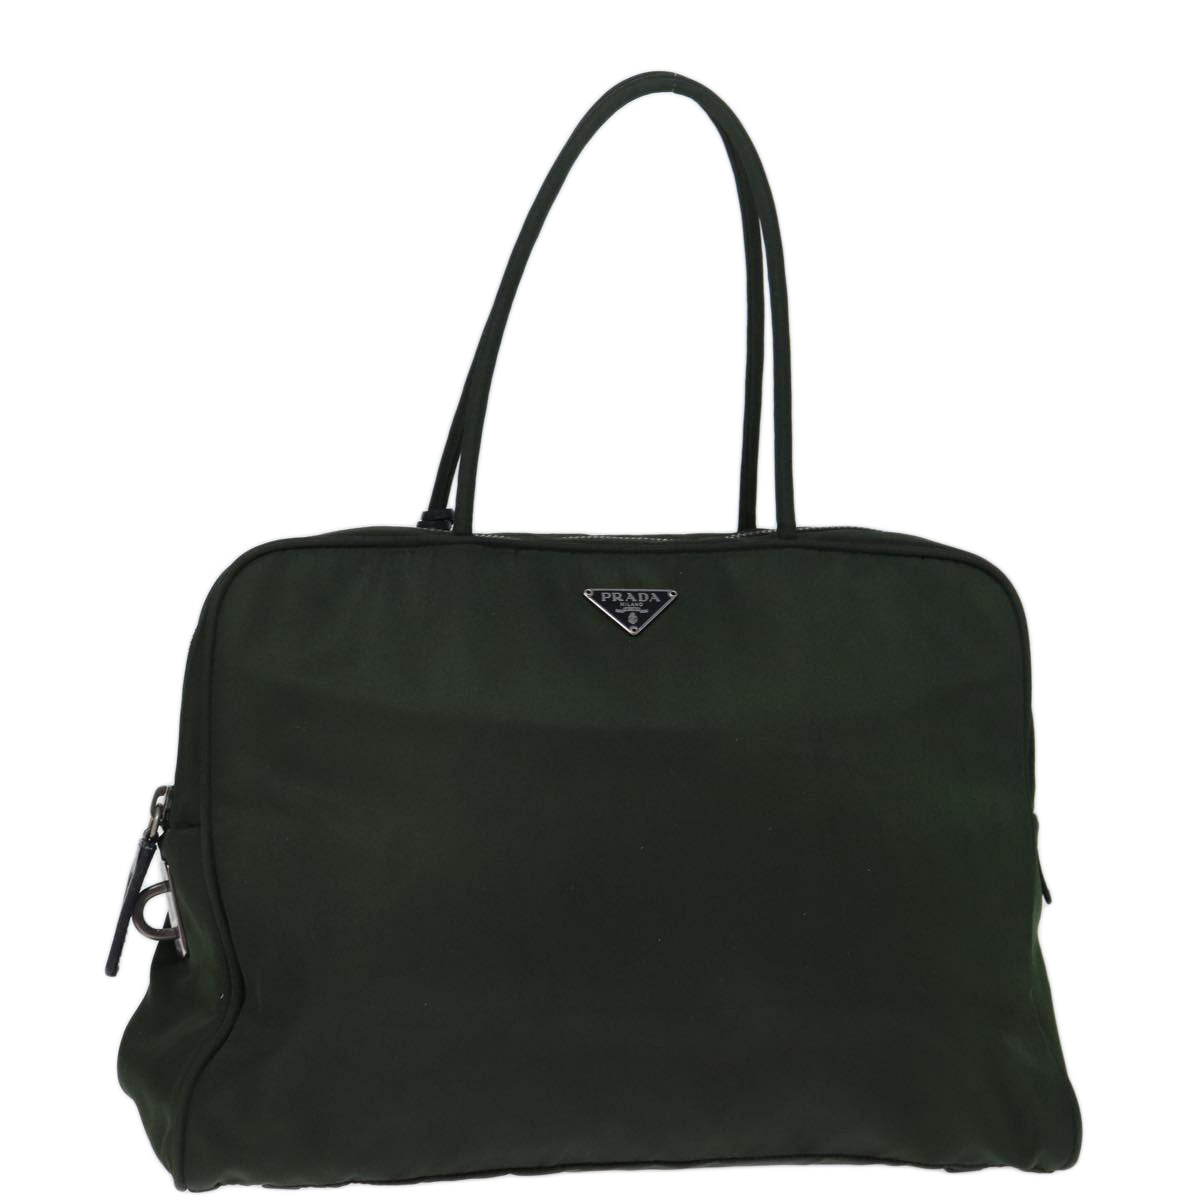 PRADA Hand Bag Nylon Khaki Auth 73205